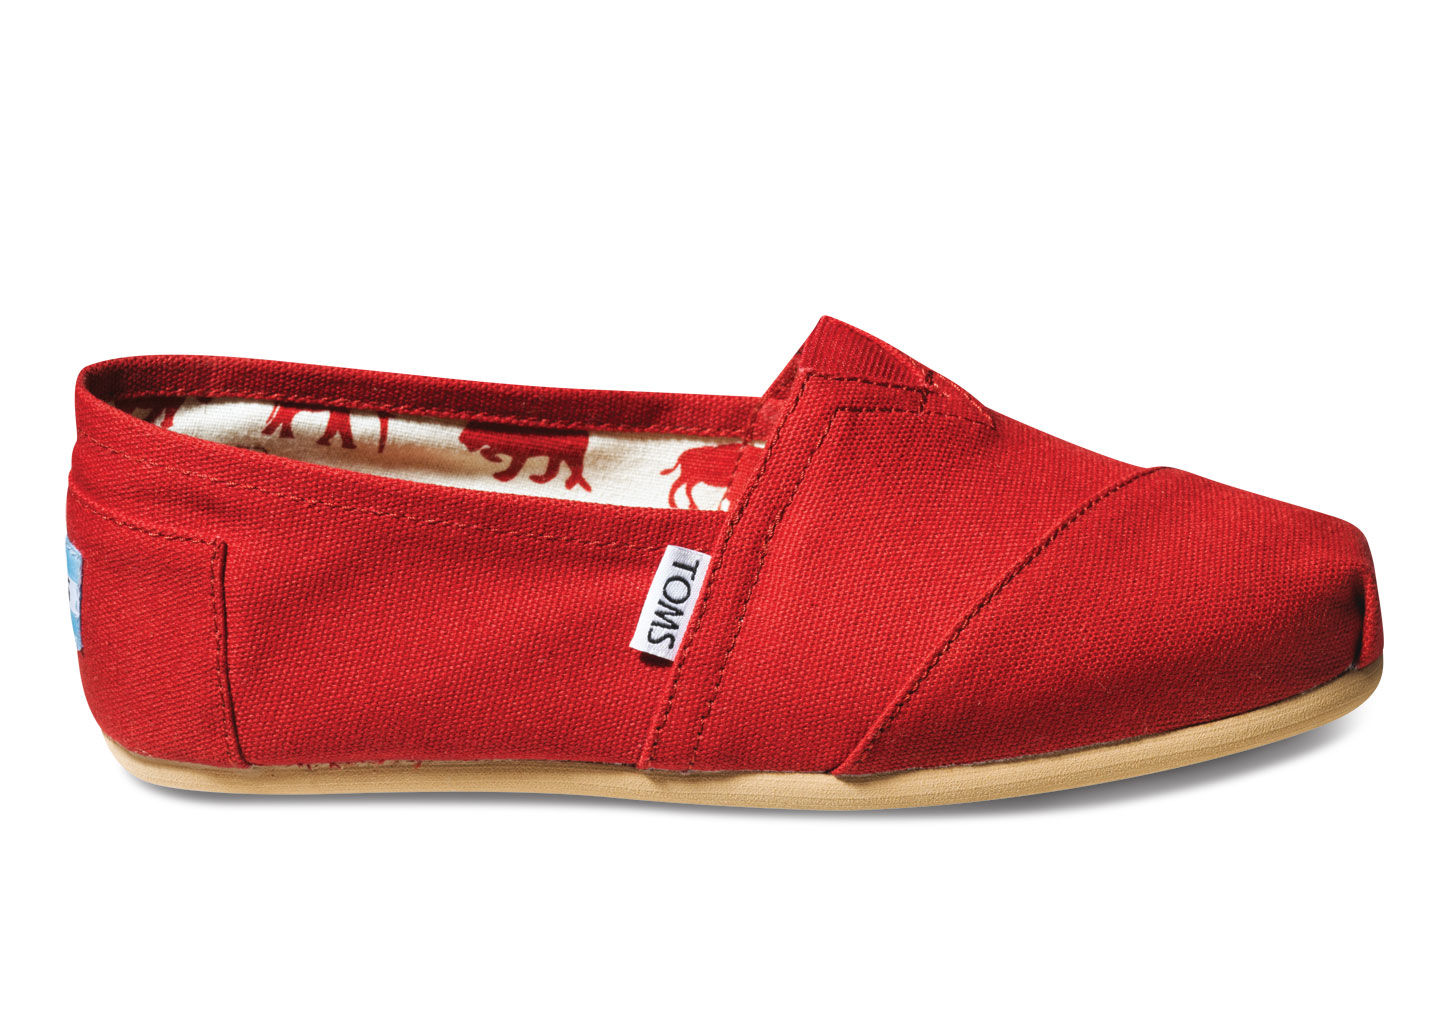 Toms обувь. Альпаргаты обувь. Ботинки Toms. Красные ботинки Toms Shoes.